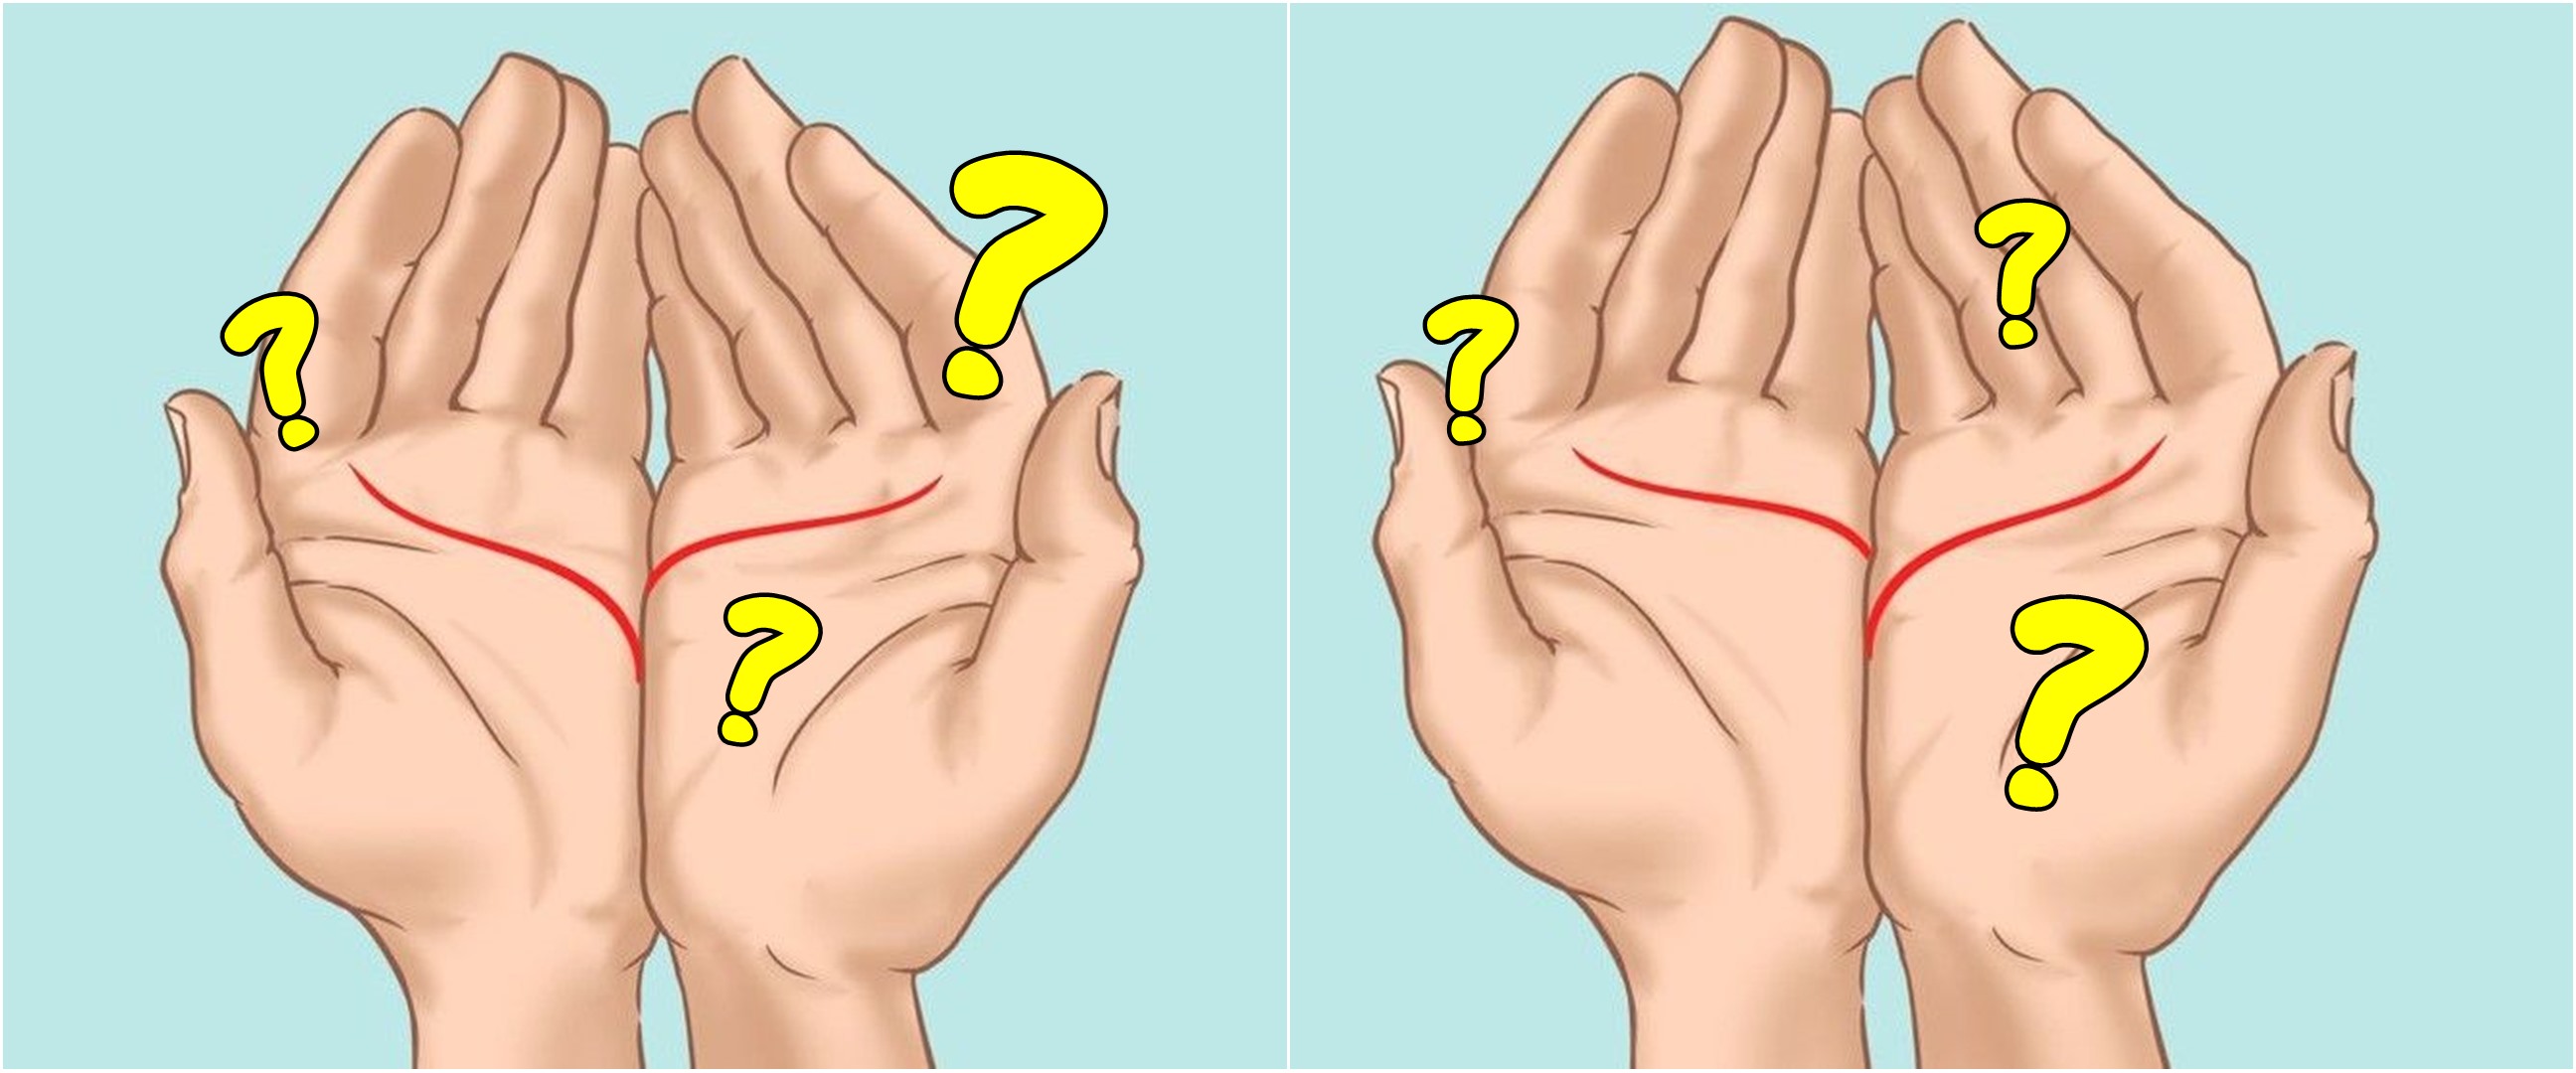 Cara menengadahkan tangan ungkap seperti apa kamu dalam bersosialisasi